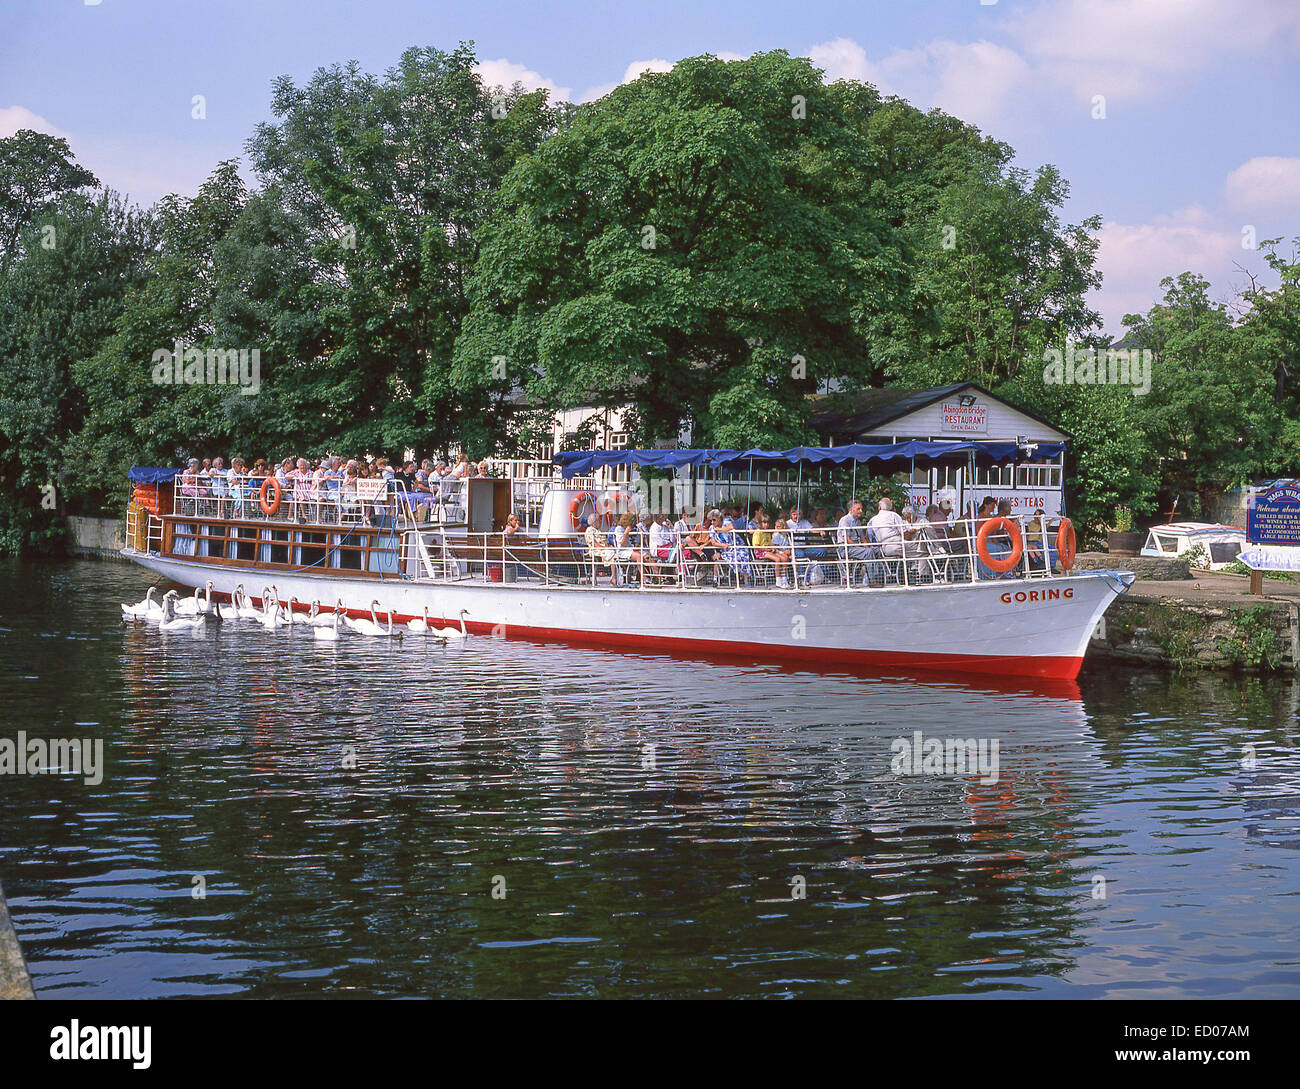 Salter Dampfer Bootsfahrt in Abingdon Brücke über Fluß Themse, Abingdon-on-Thames, Oxfordshire, England, Vereinigtes Königreich Stockfoto